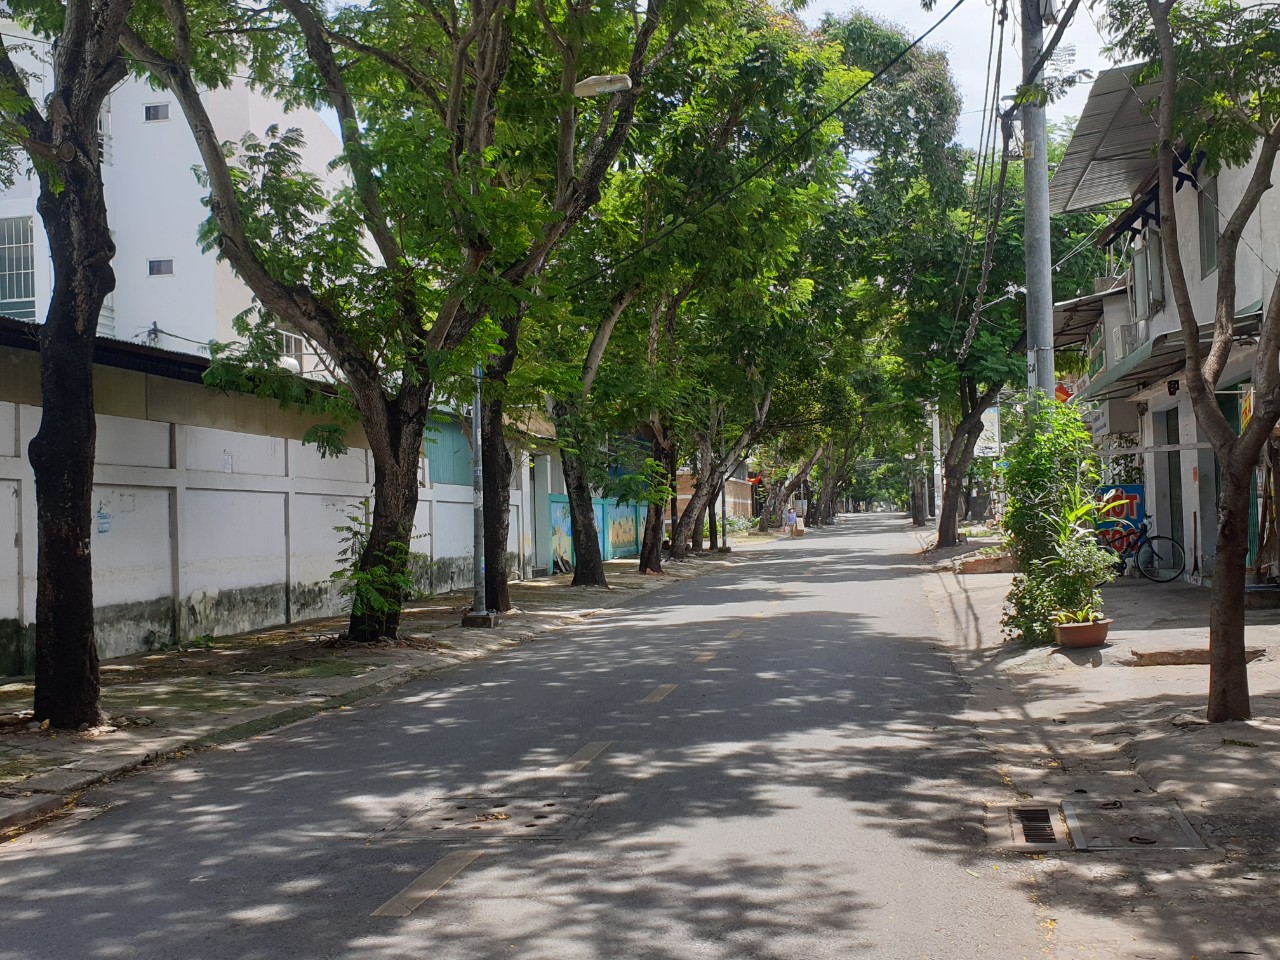  Bán lô đất mặt tiền đường Bác Ái, Phường Bình Thọ, Tp. Thủ Đức giá chỉ có 69 triệu/m2